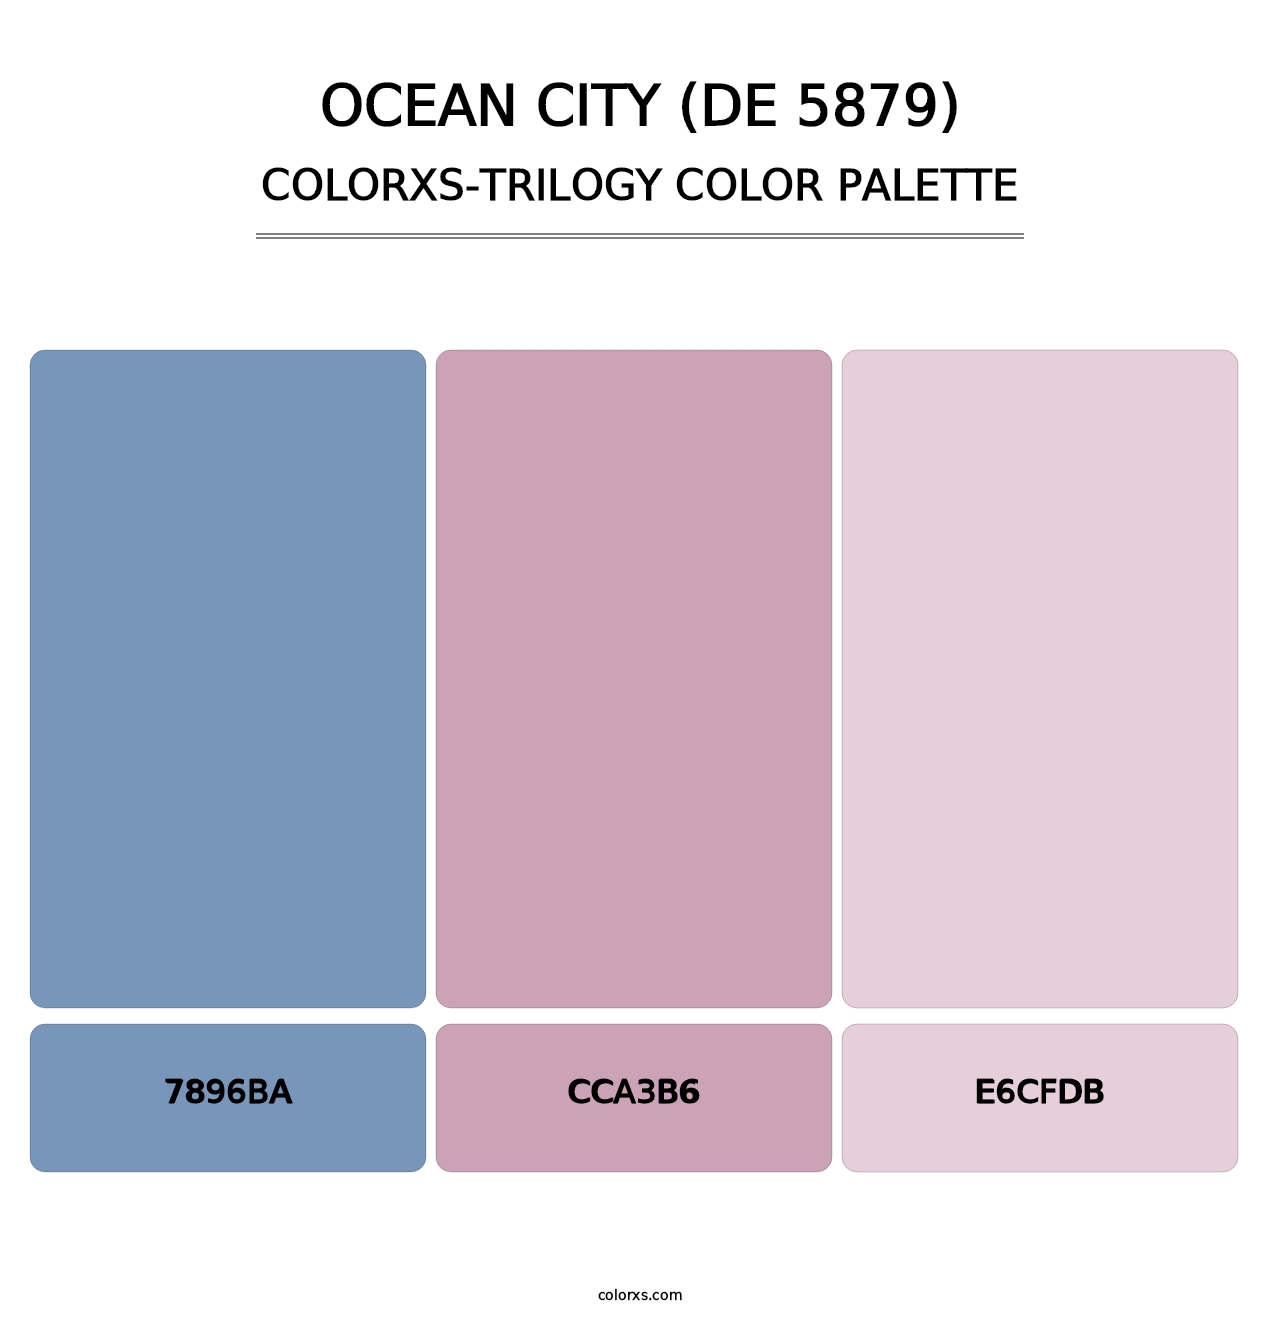 Ocean City (DE 5879) - Colorxs Trilogy Palette